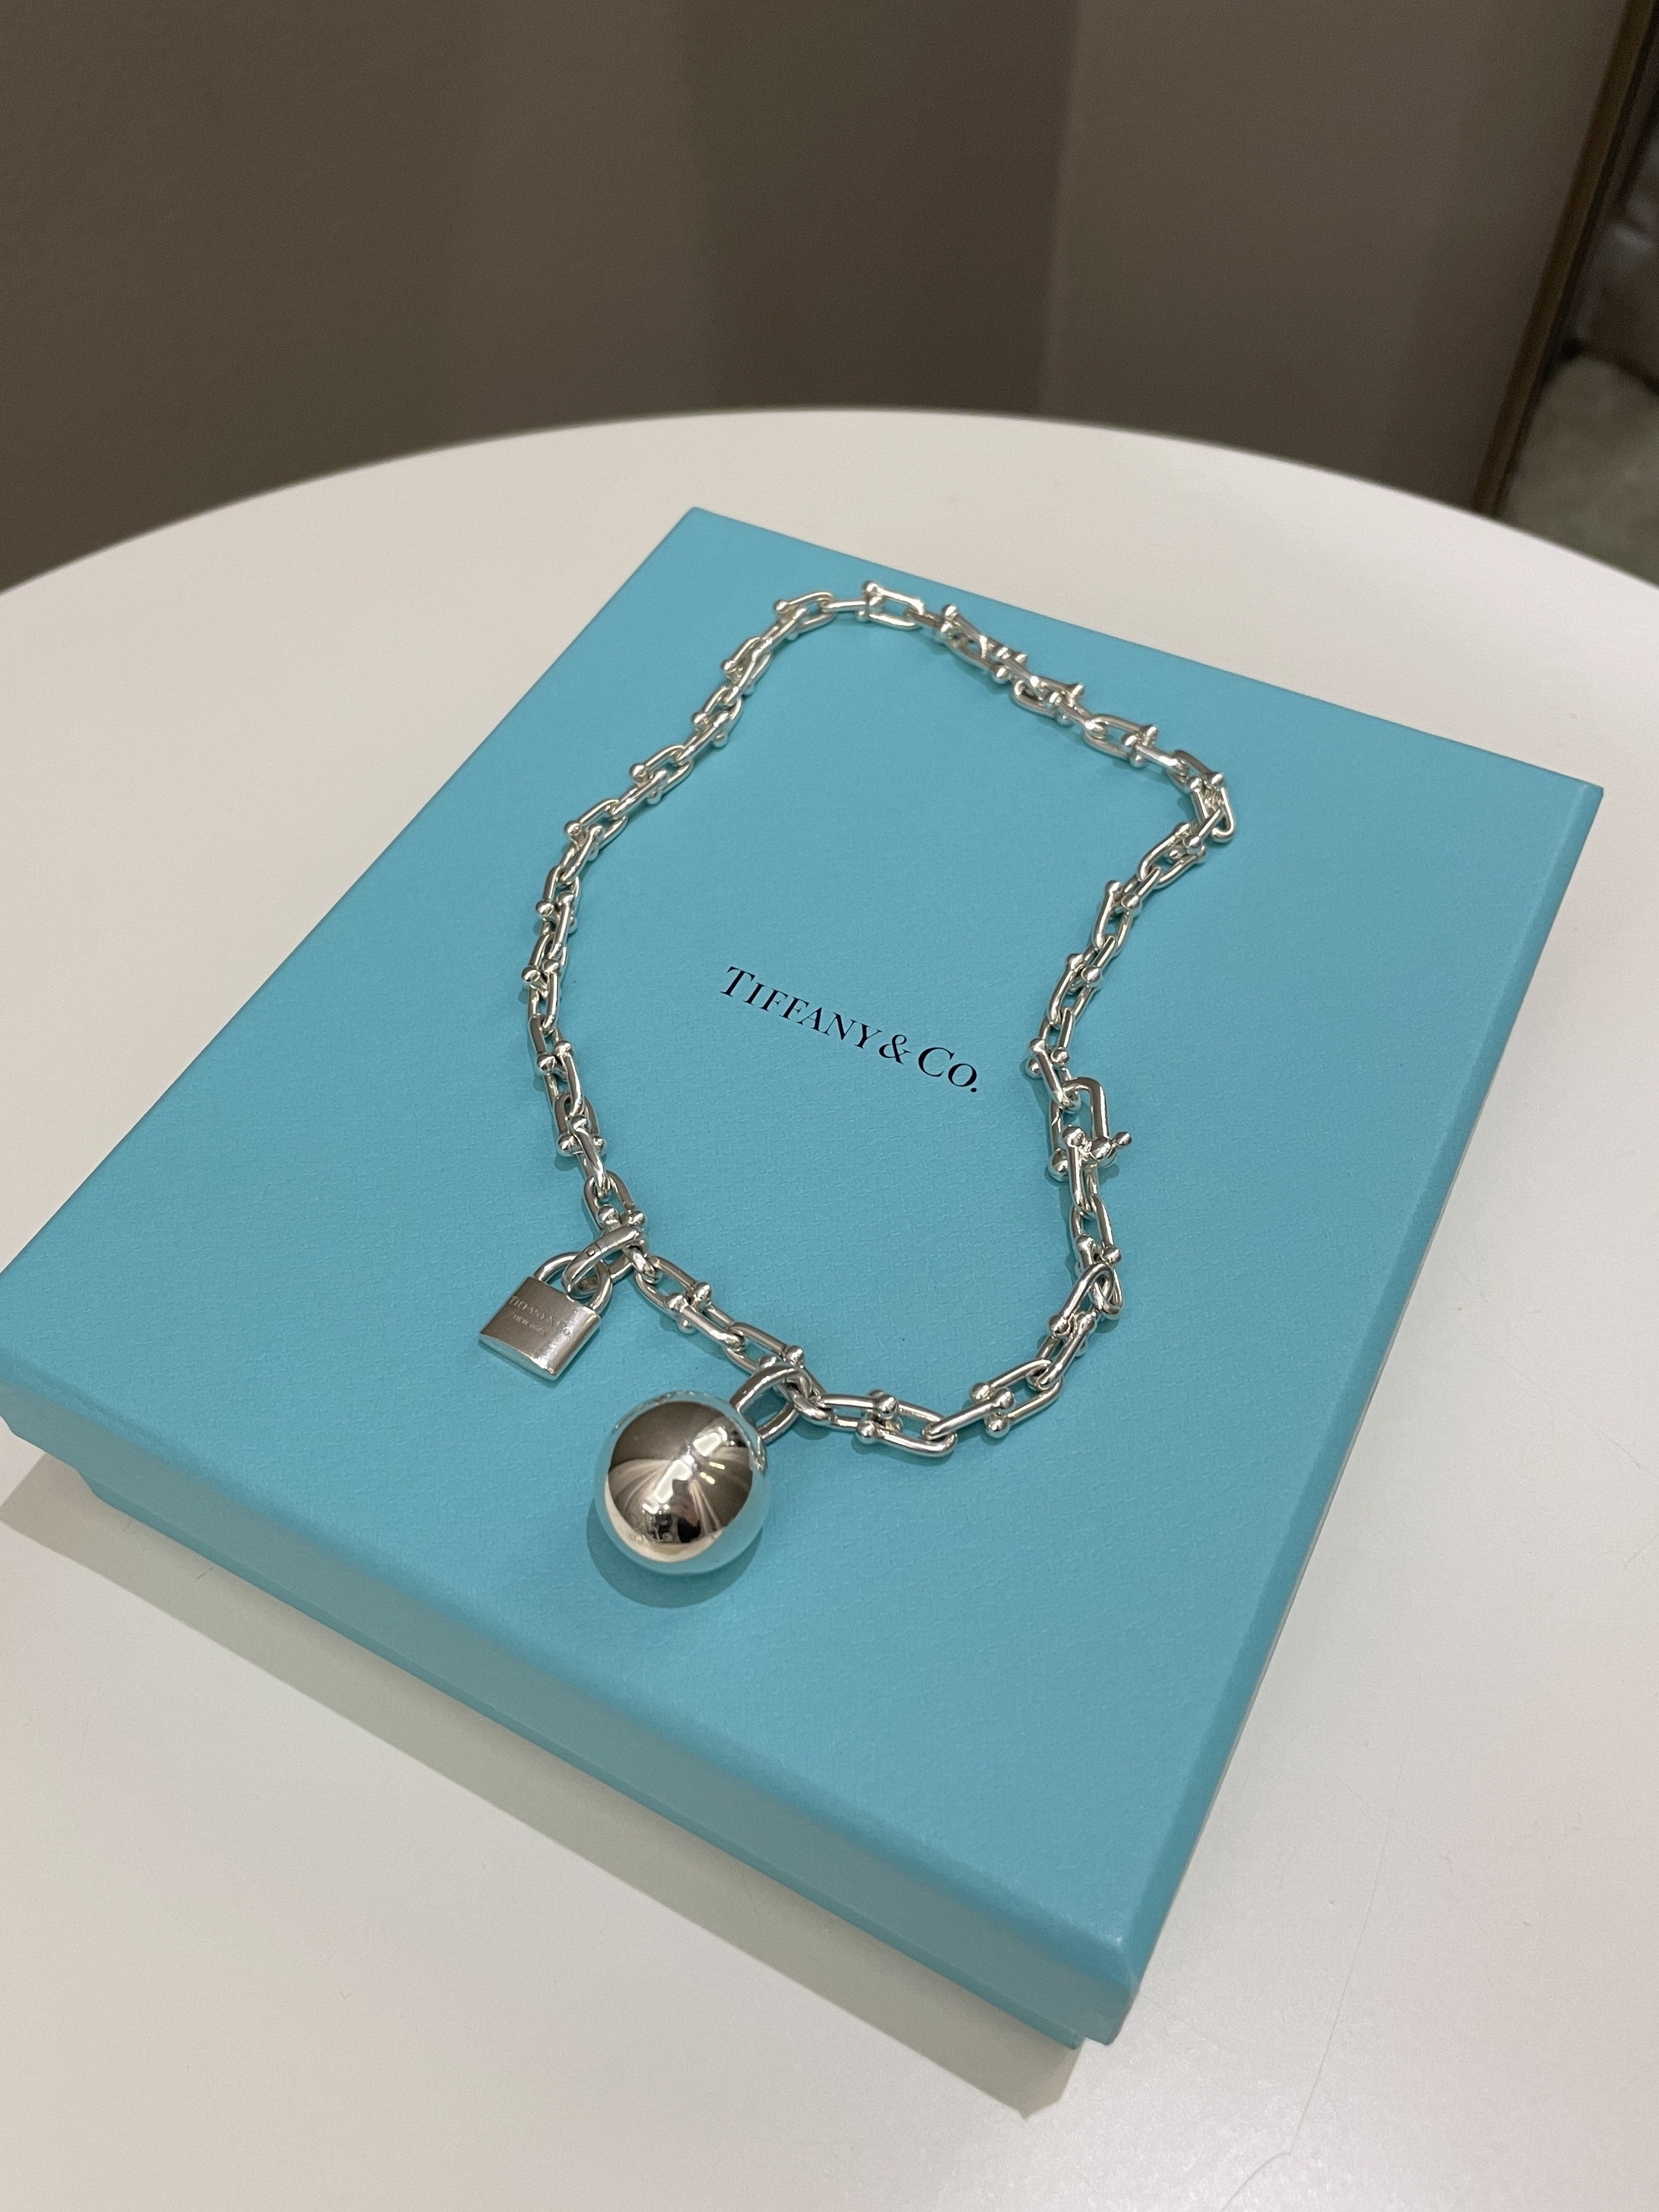 Tiffany & Co Hardwear Wrap Bracelet / Chocker 925 silver